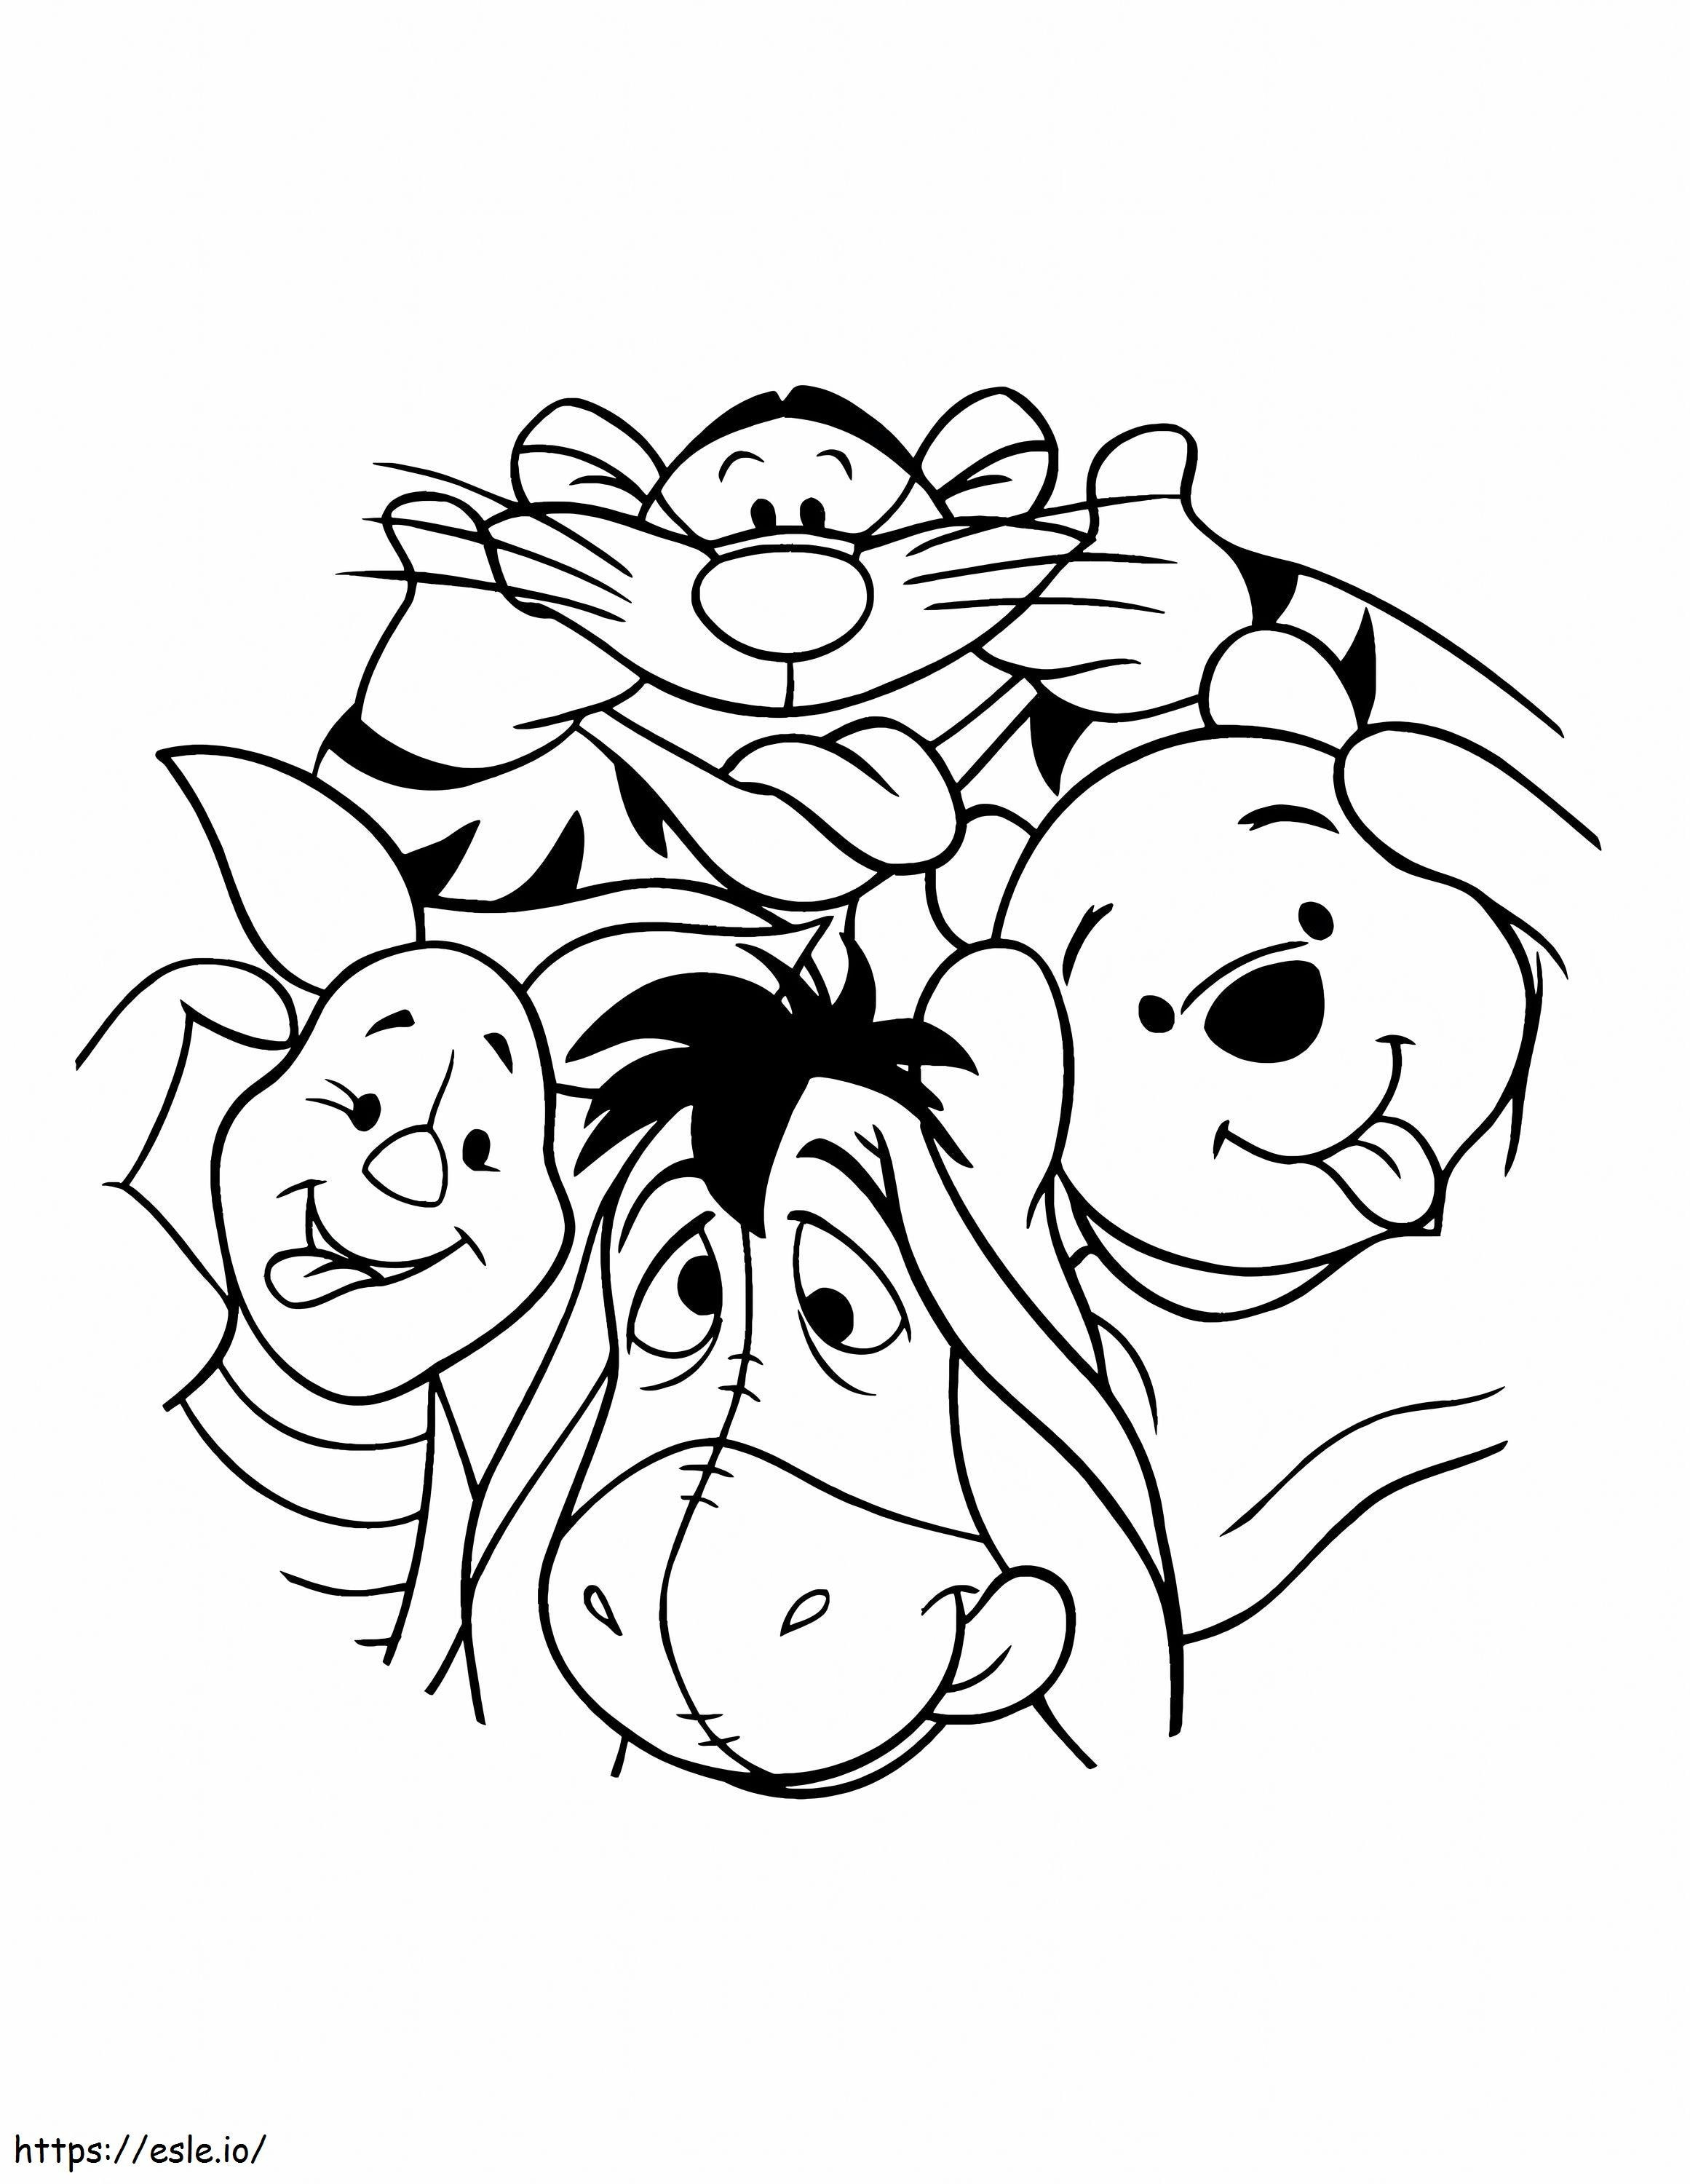 Orso Disney Pooh e i suoi amici da colorare